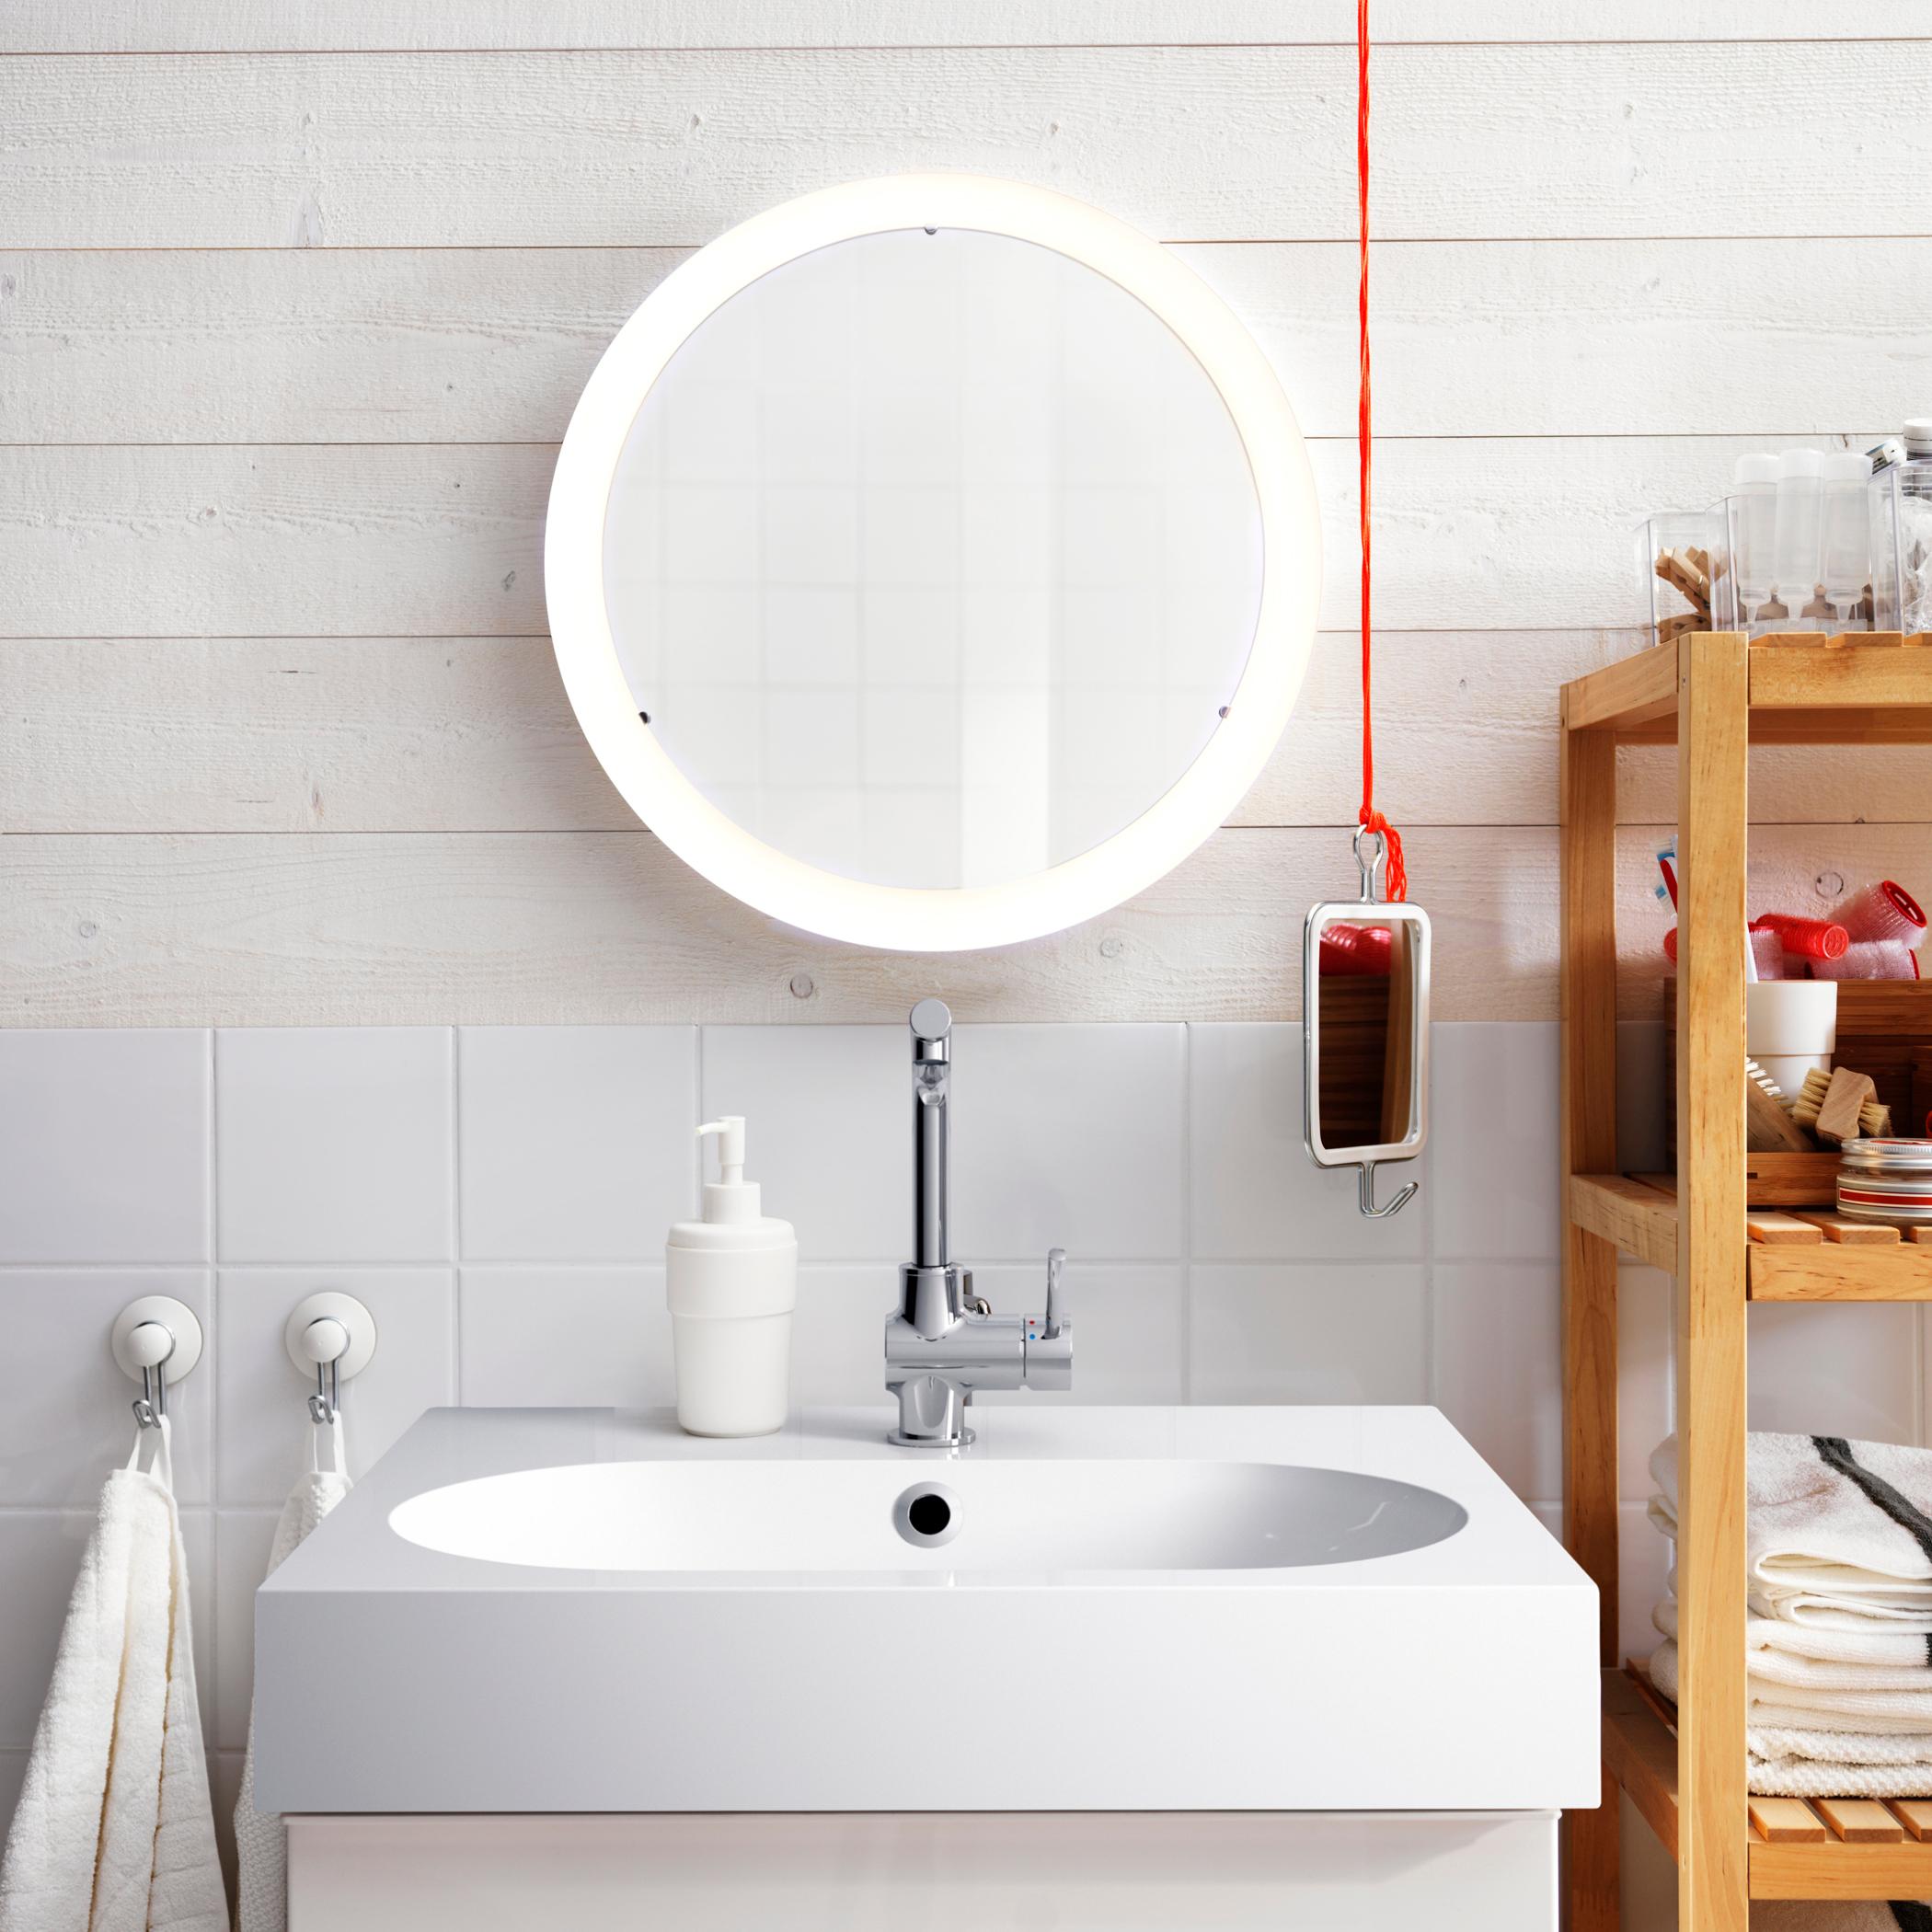 Runder Spiegel sorgt für Durchblick #regal #badezimmer #spiegel #waschbecken #ikea #runderspiegel #seifenspender ©Inter IKEA Systems B.V.